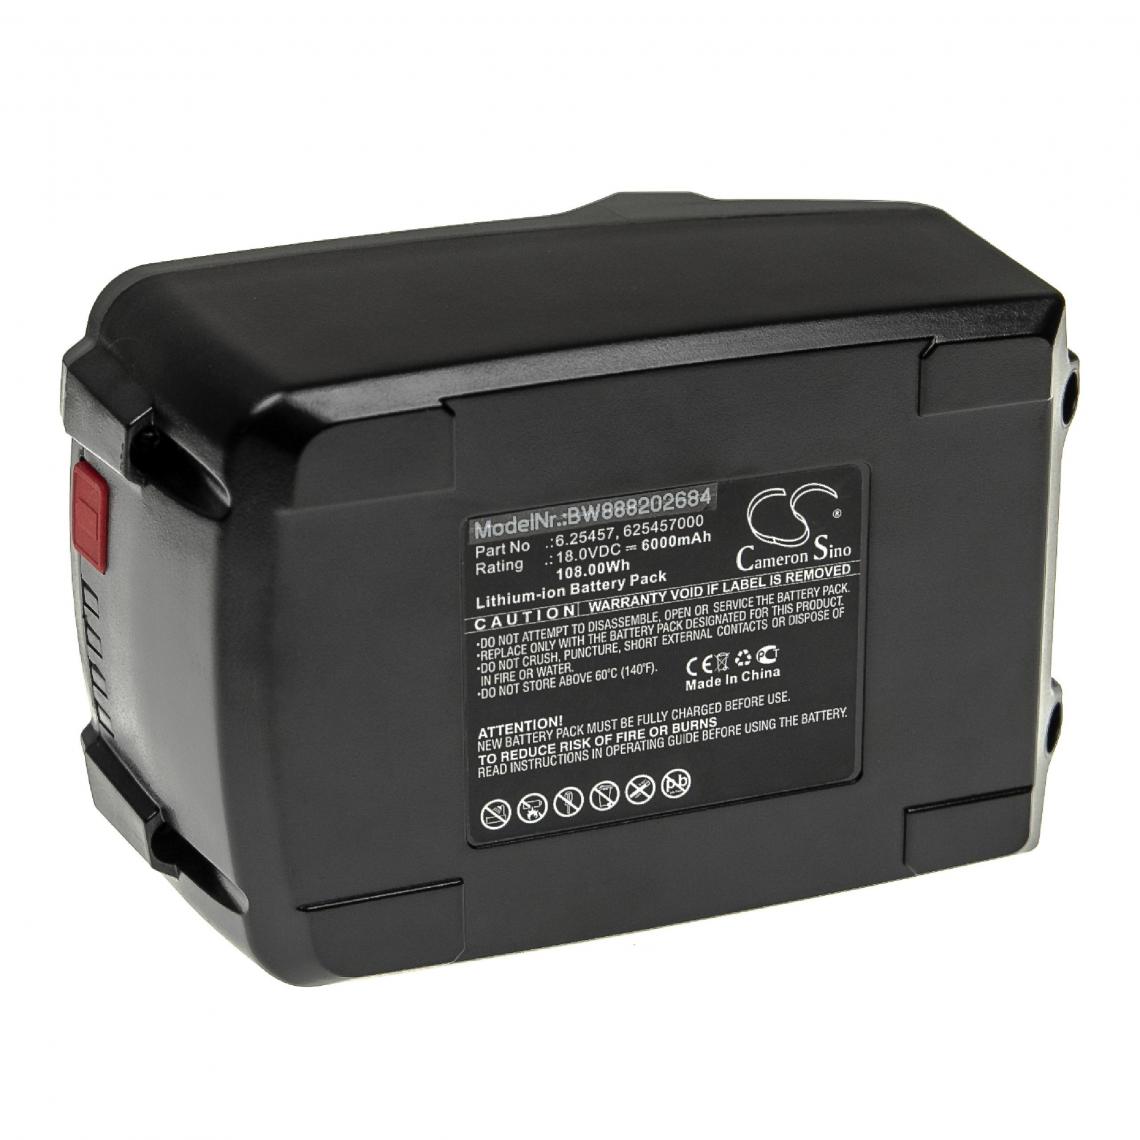 Vhbw - vhbw Batterie compatible avec Metabo BSA 14.4-18 LED, CC 18 LTX BL, GA 18 LTX outil électrique (6000mAh Li-ion 18 V) - Autre appareil de mesure